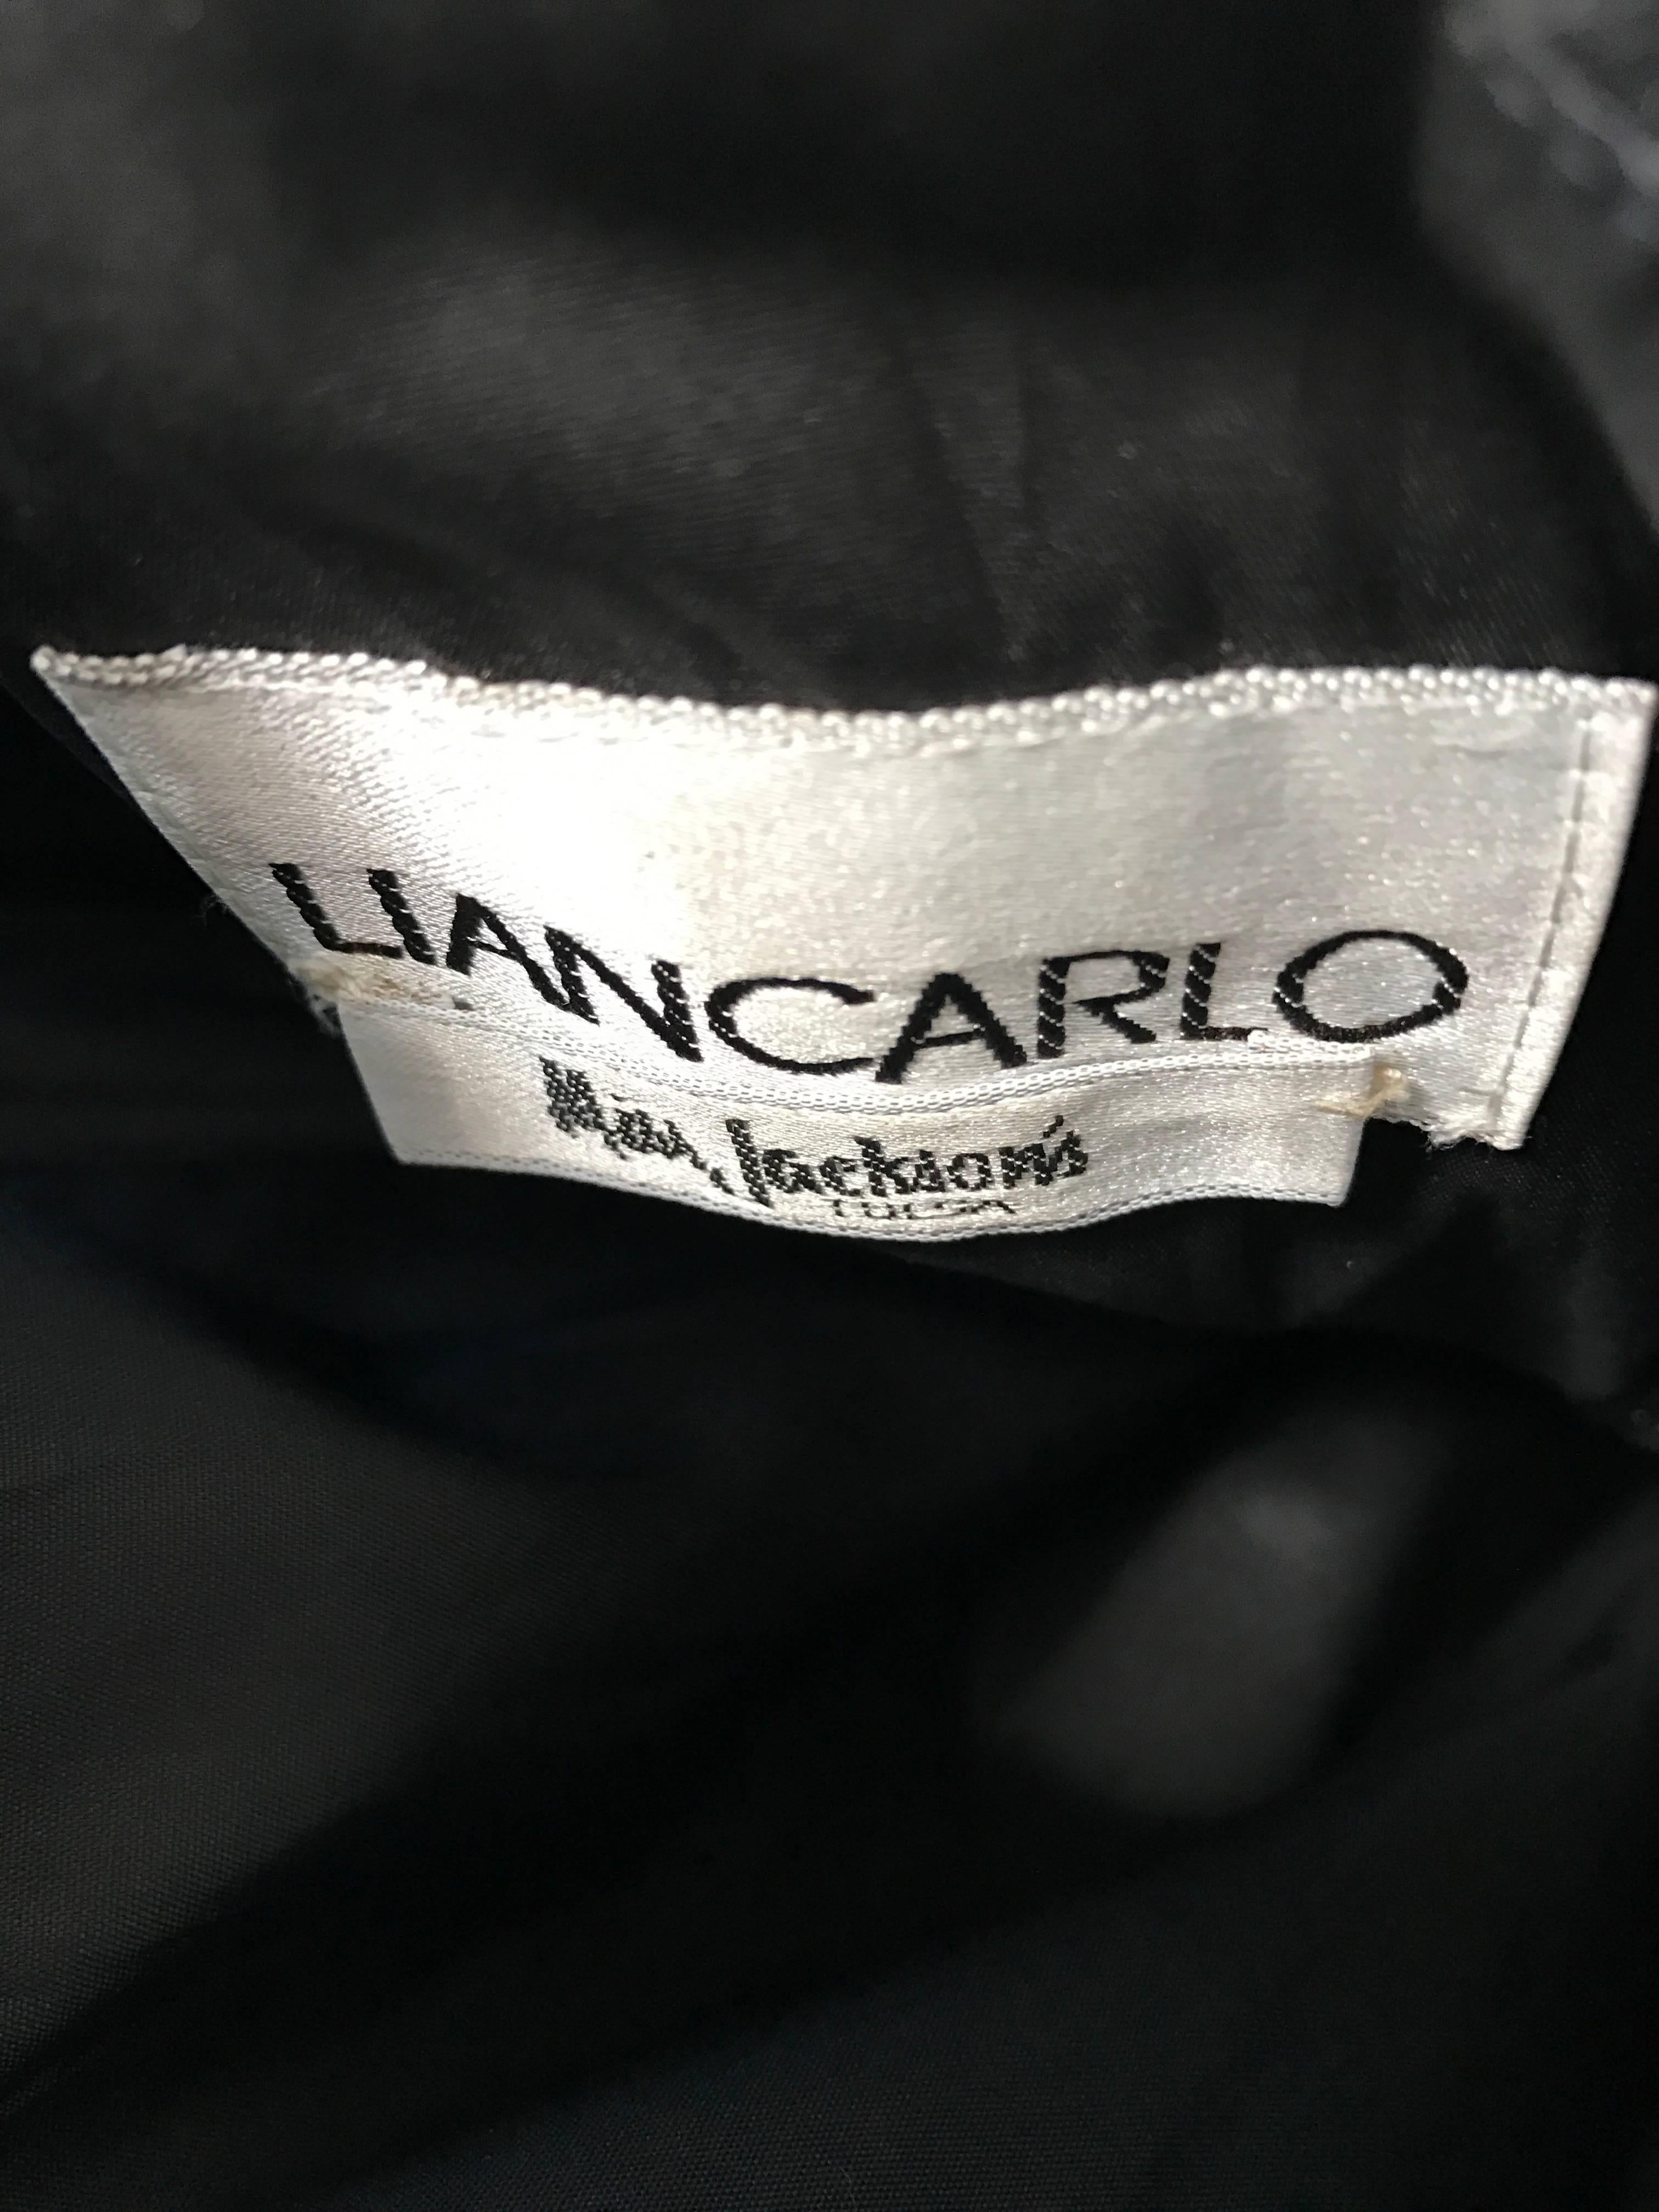 1990s Liancarlo Couture Vintage Avant Garde Black Lace Peplum 90s Cocktail Dress For Sale 3